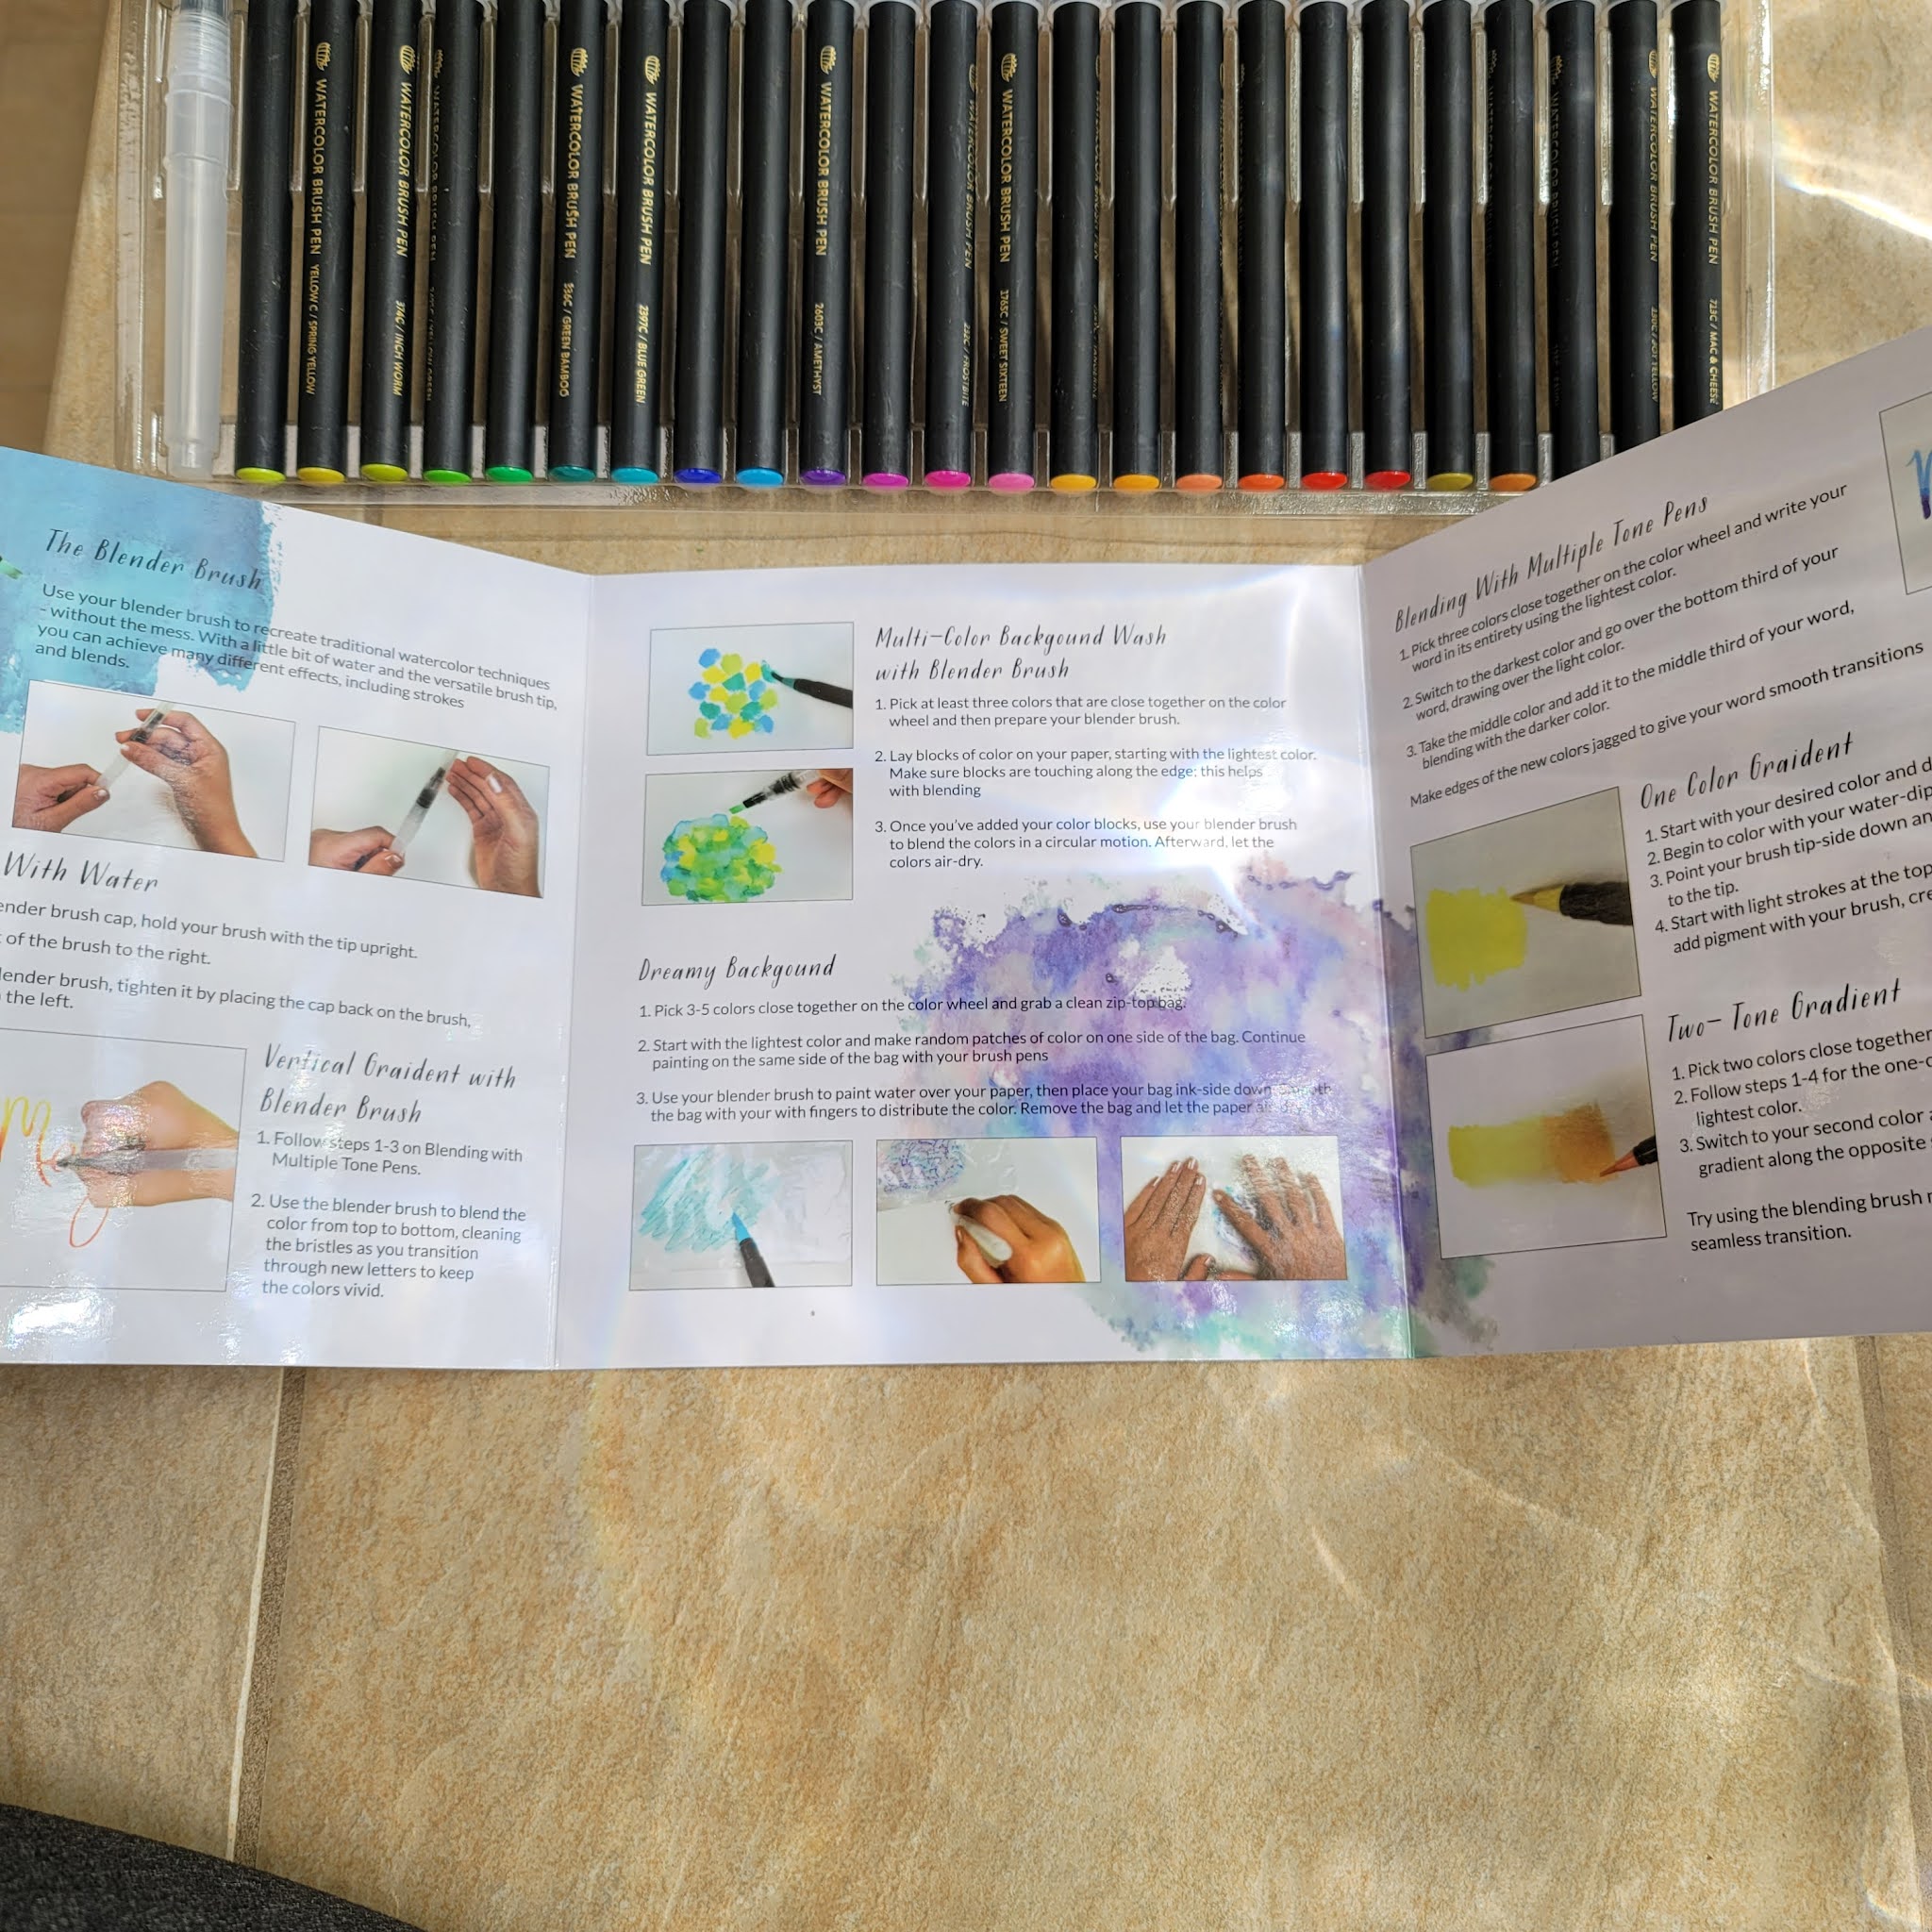  Gift Box : 48 Premium Watercolor Brush Pens, Highly